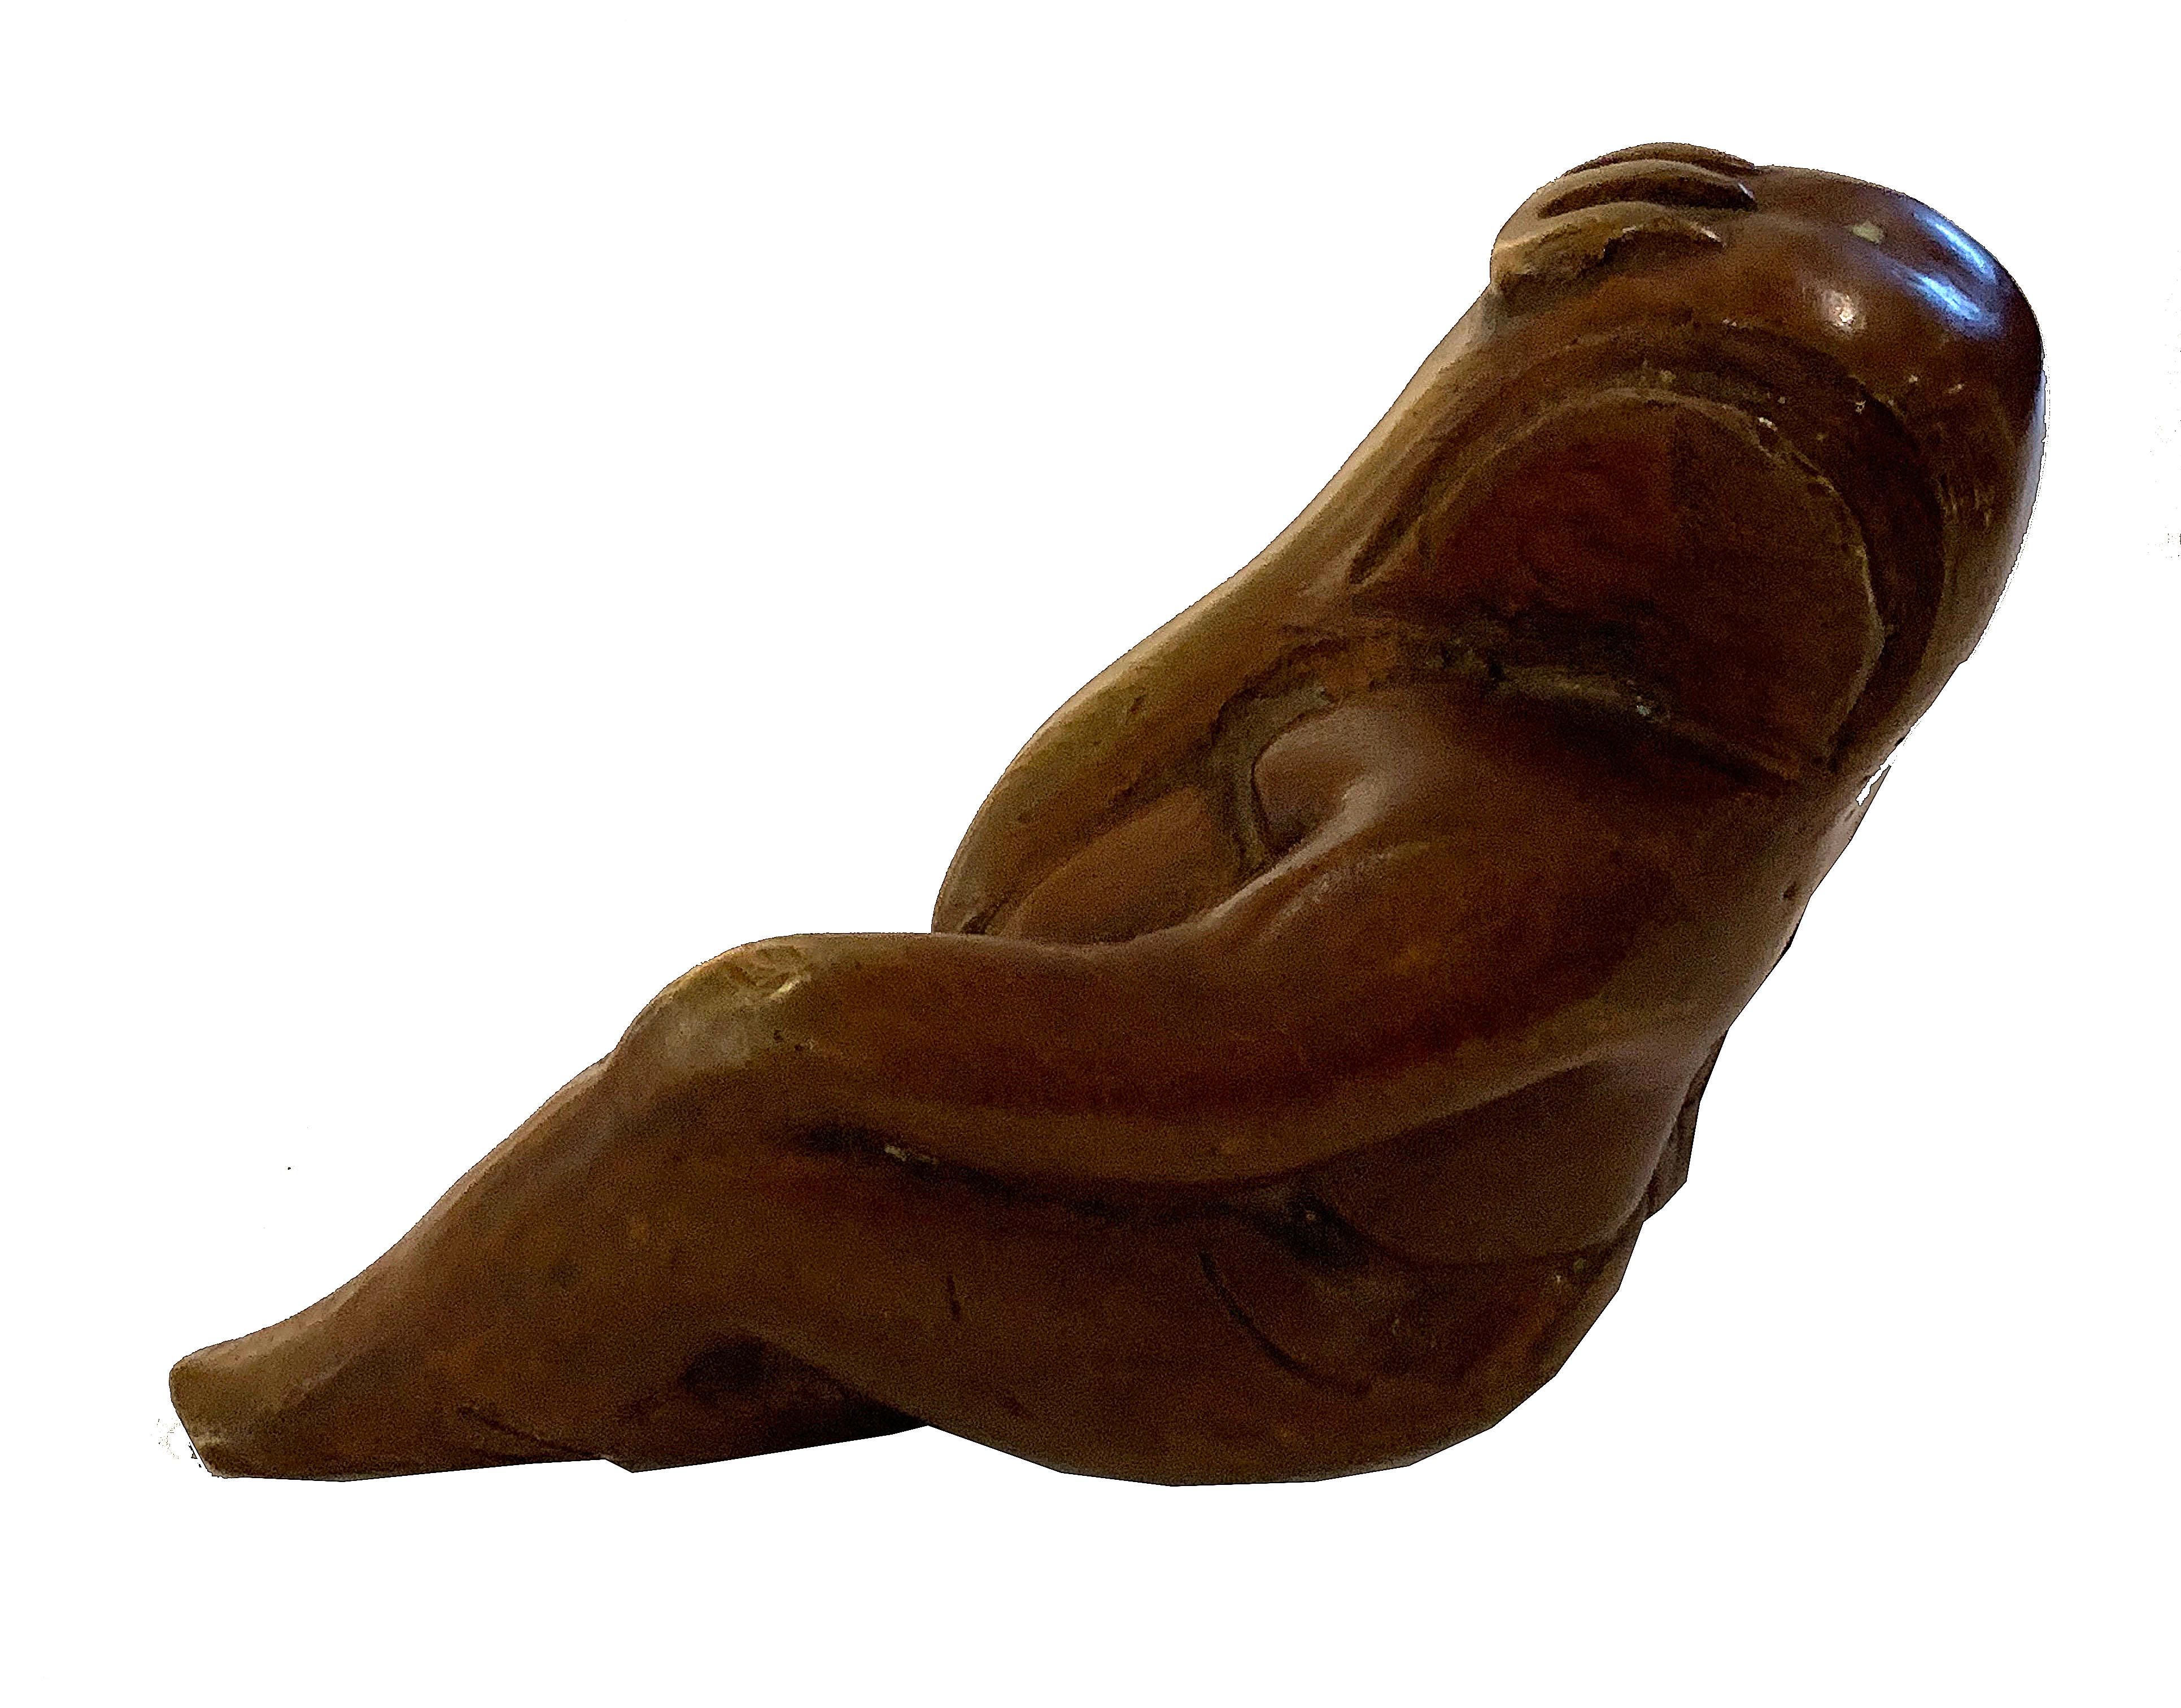 Petite sculpture de femme assise. Bronze avec patine rouille. Non signée.